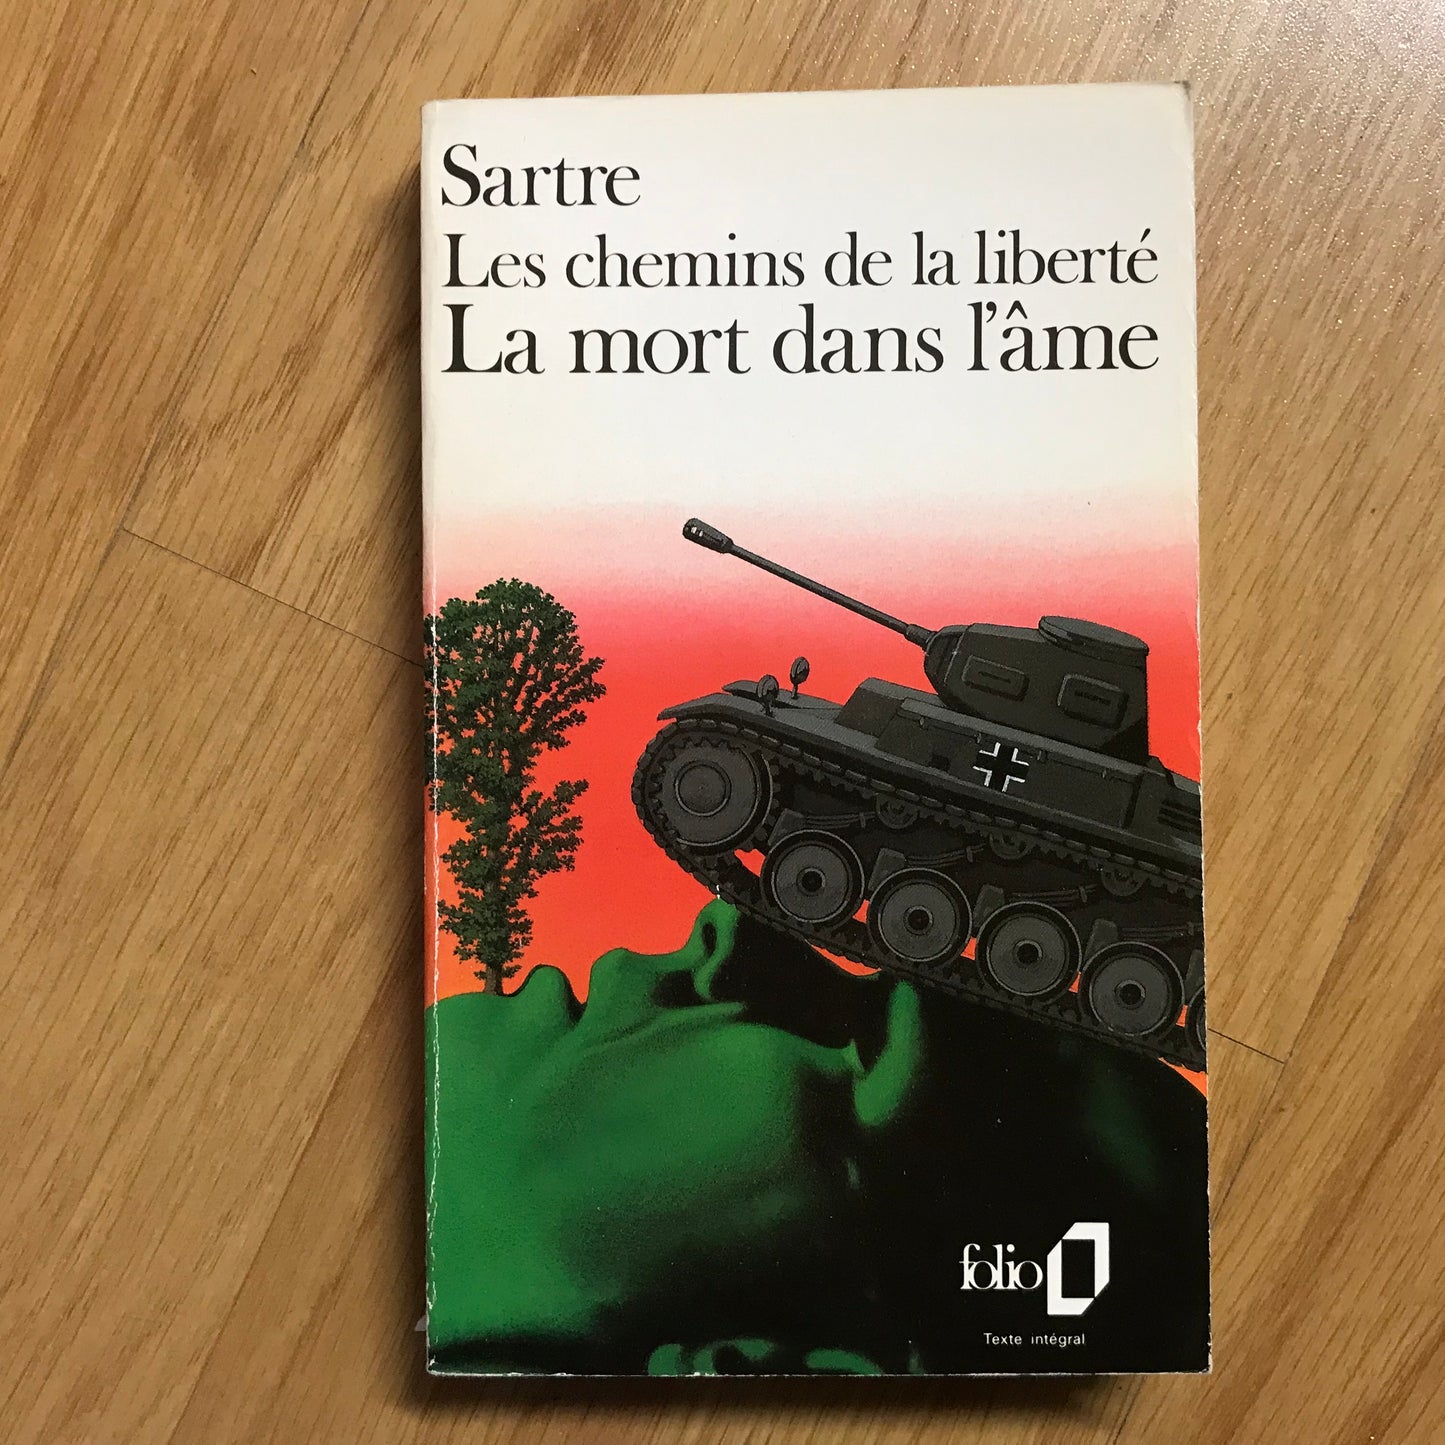 Sartre, Jean-Paul - La mort dans l’âme